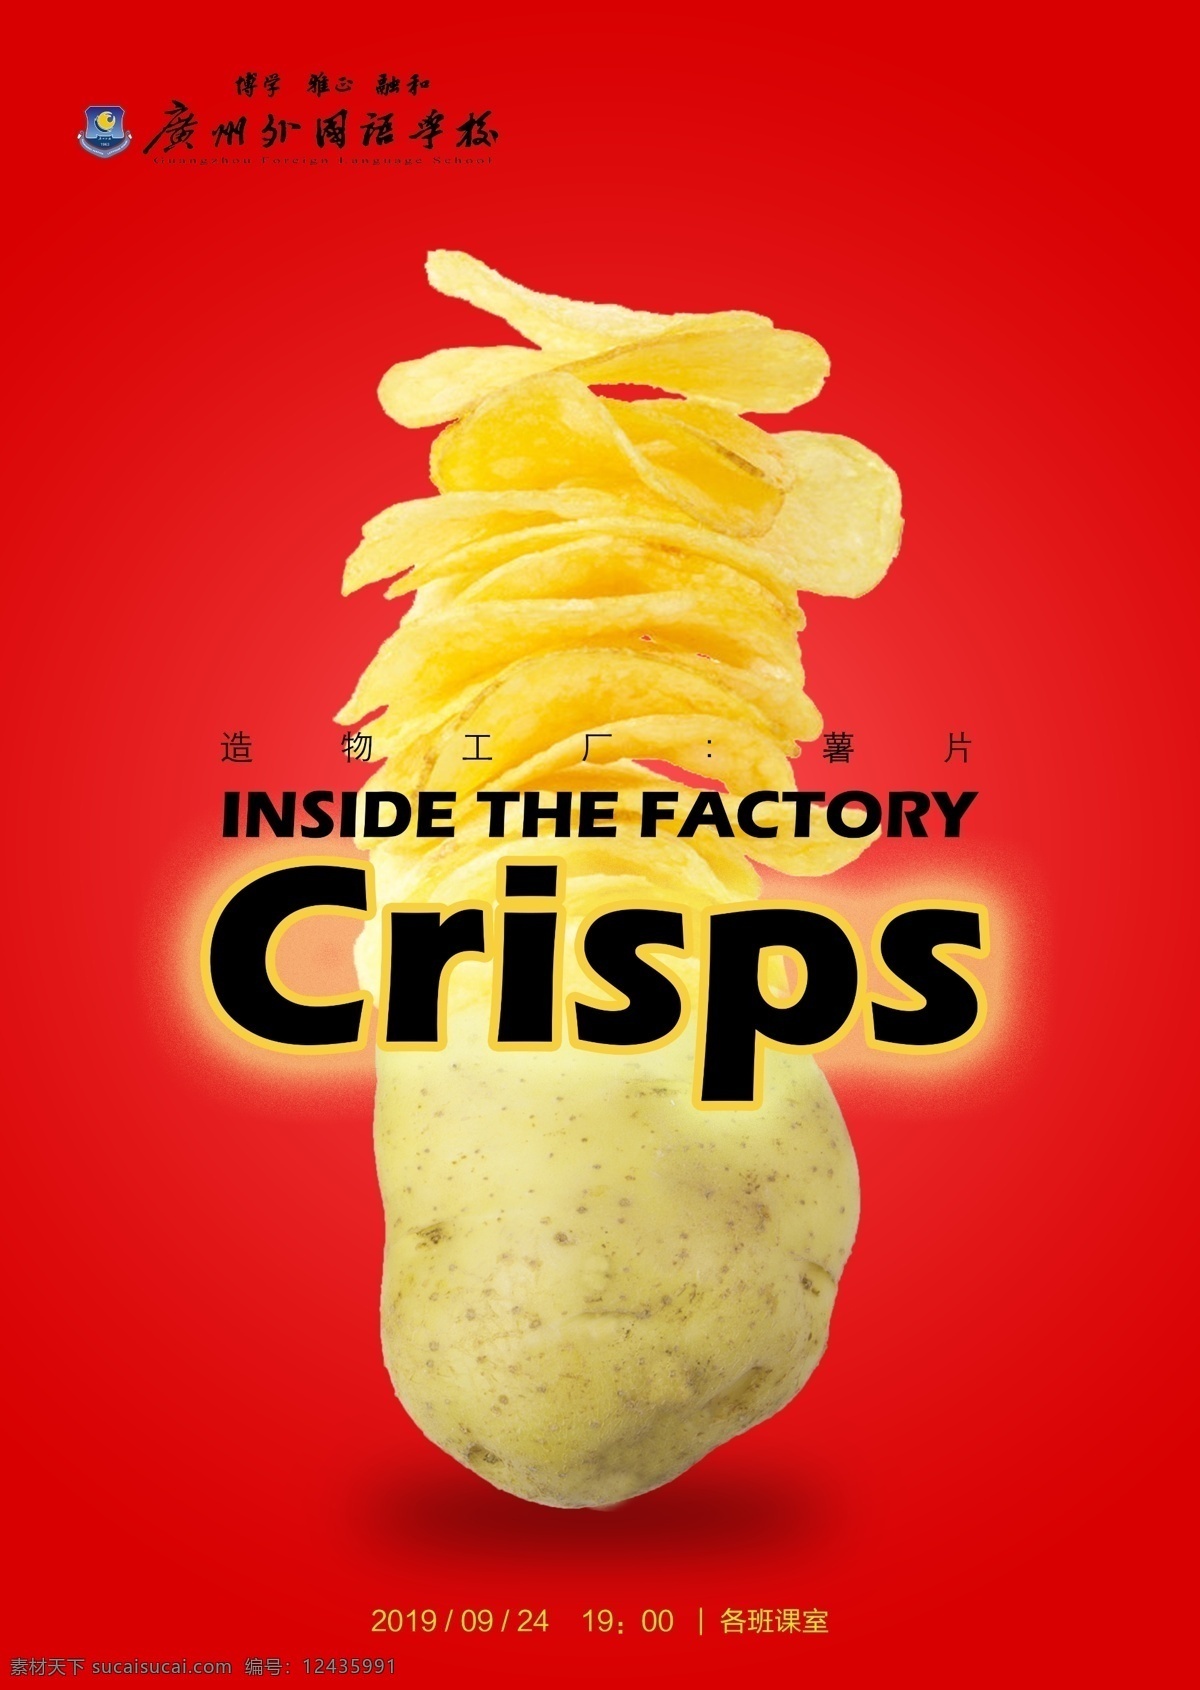 超级工厂 薯片 科普 科技 食品 生活百科 餐饮美食